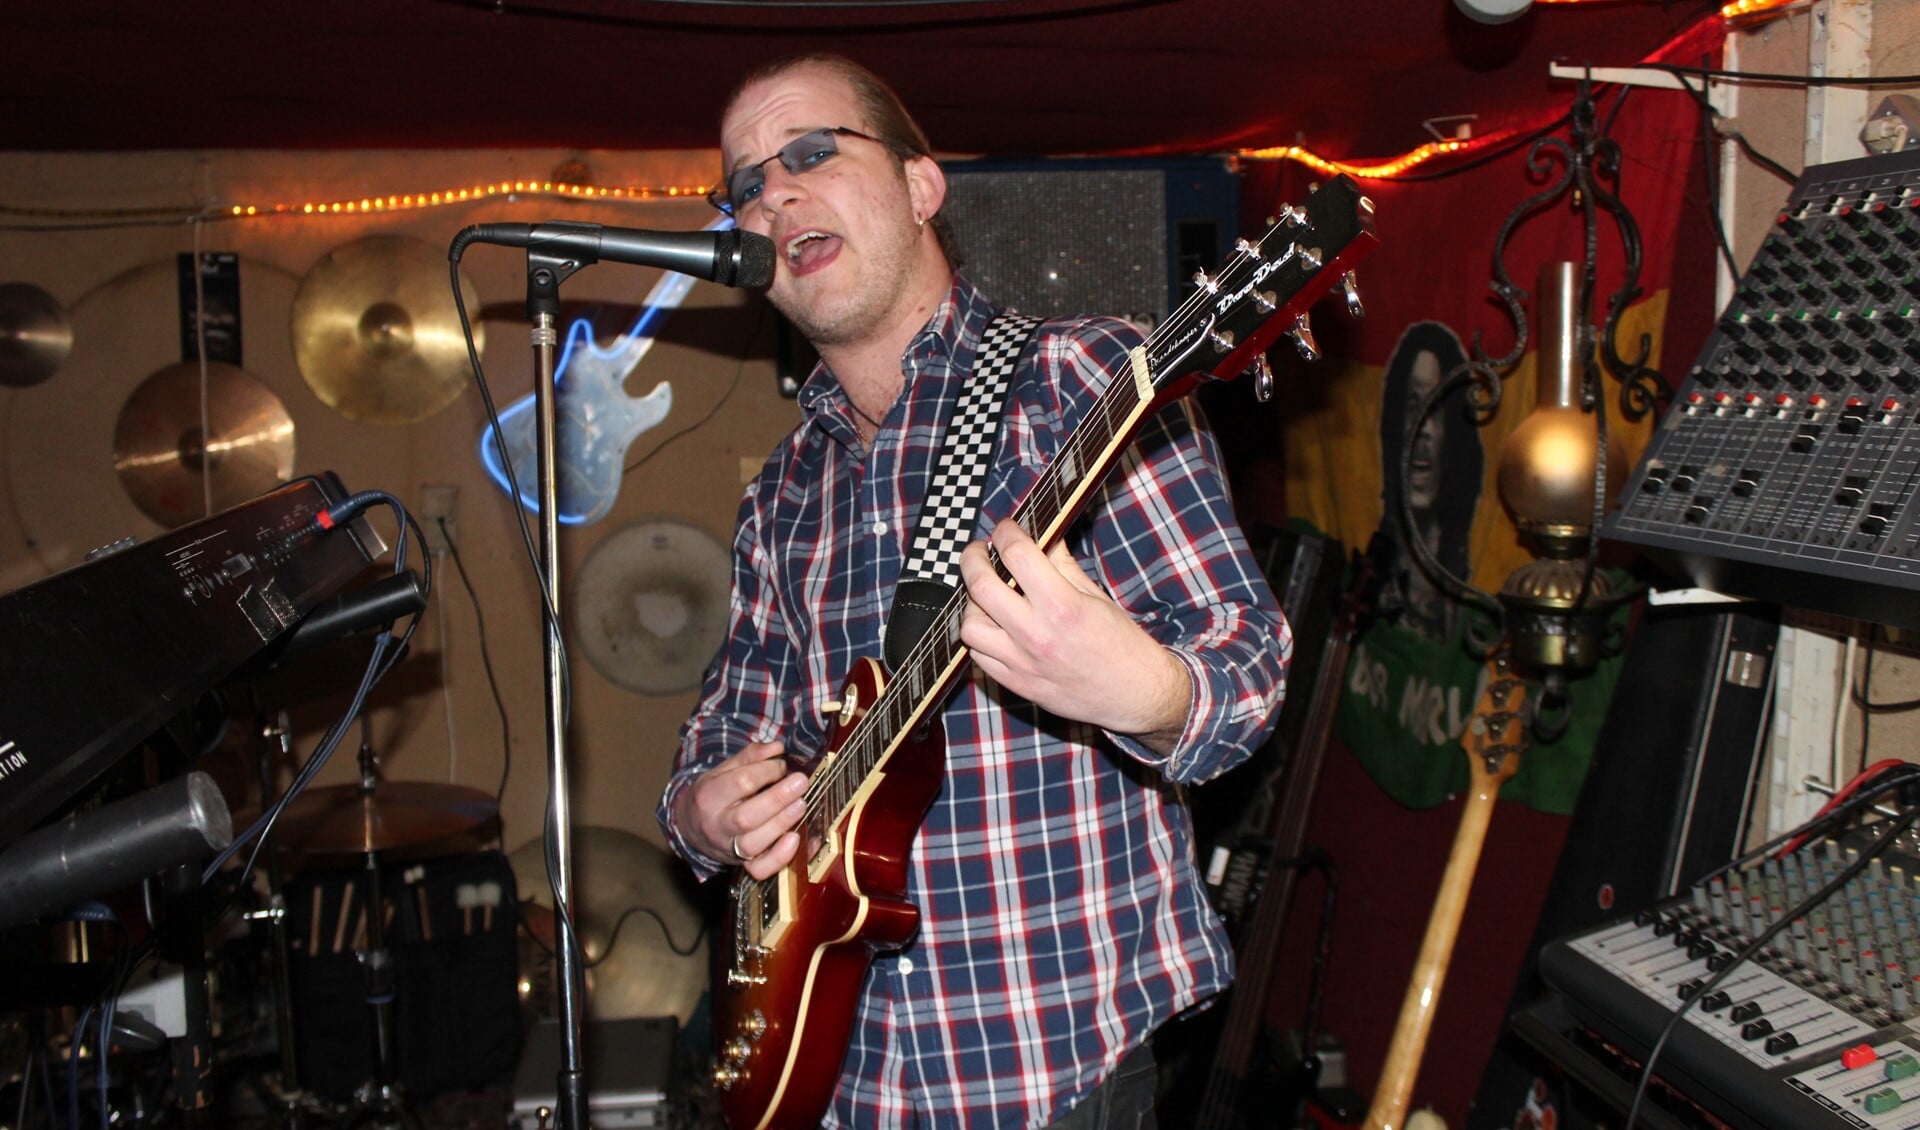 Bas Paardekooper met zijn door het gitaarmerk Doodad beschikbaar gestelde Danny Lademachter endorsement gitaar met zijn eigen naam.